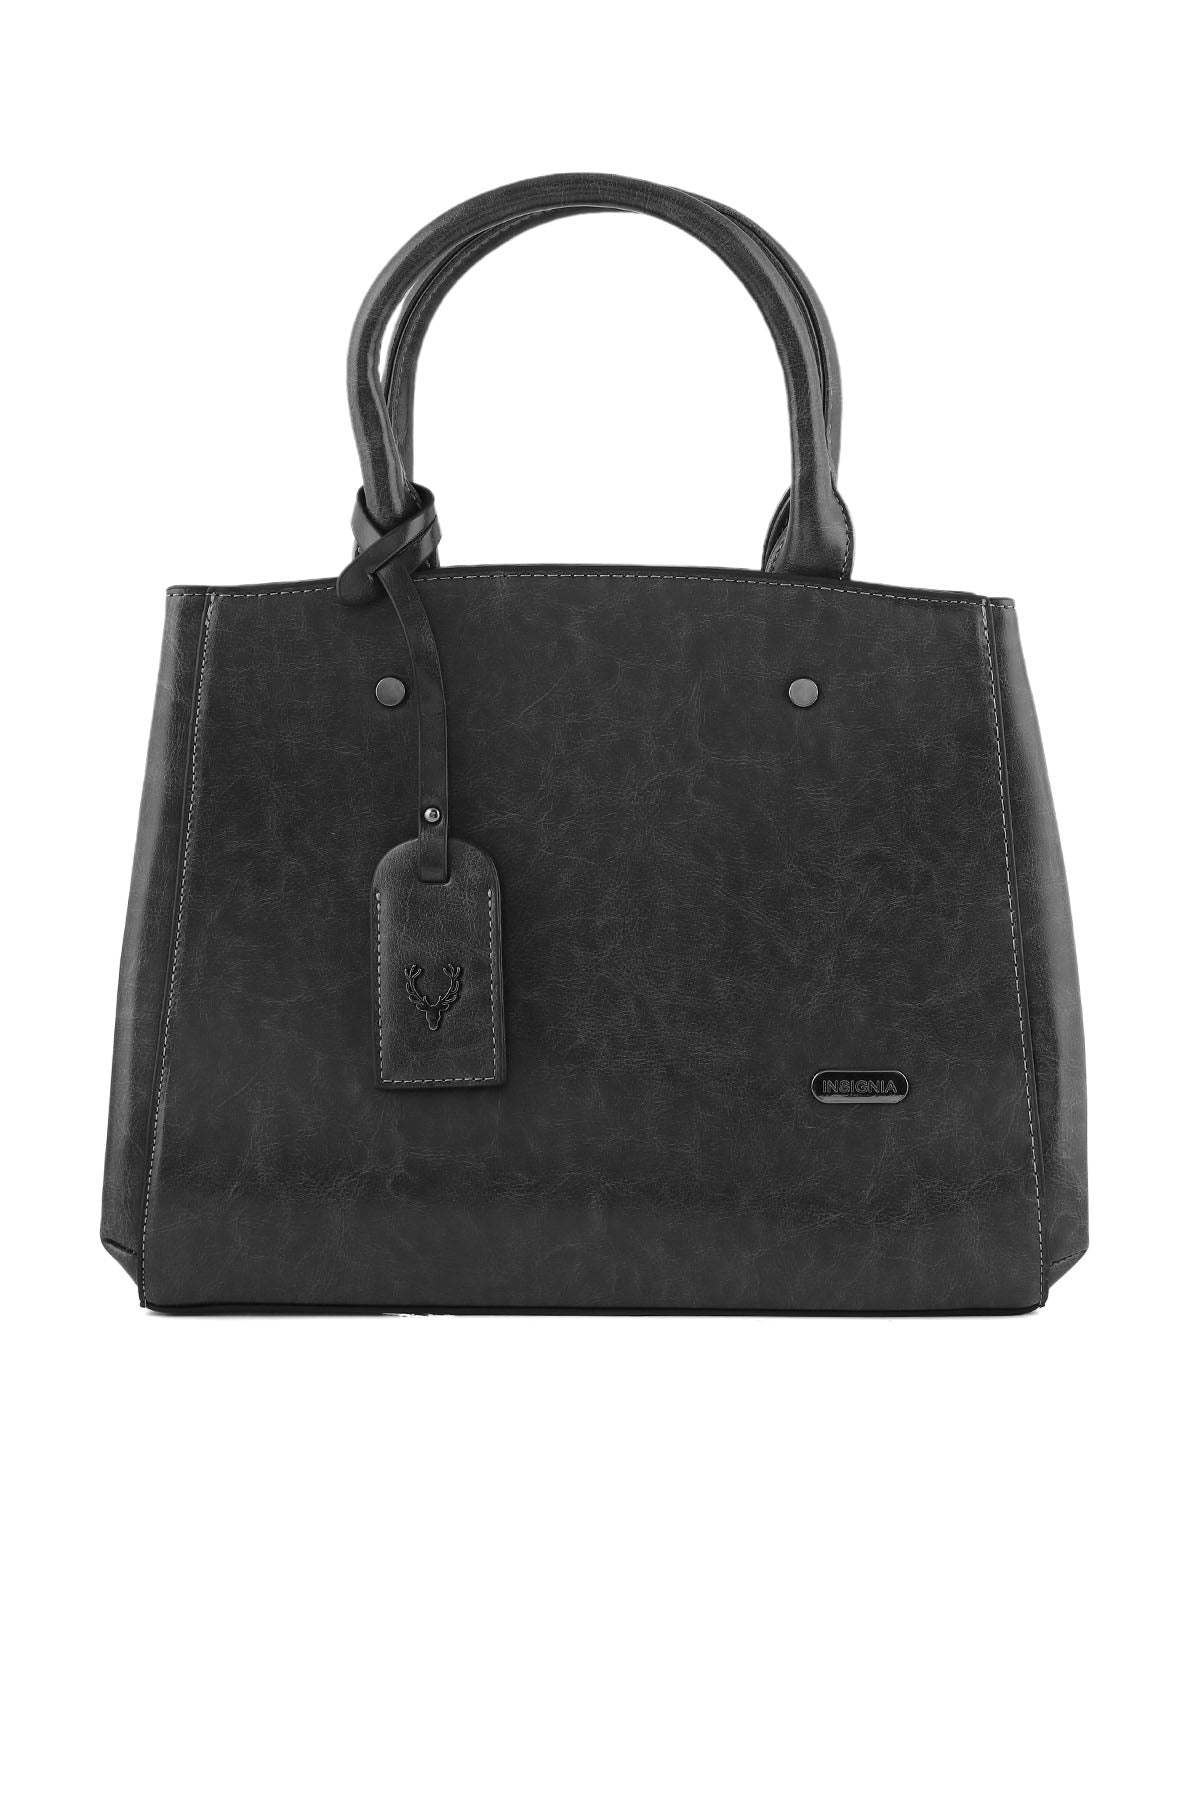 Formal Tote Hand Bags B14966-Grey